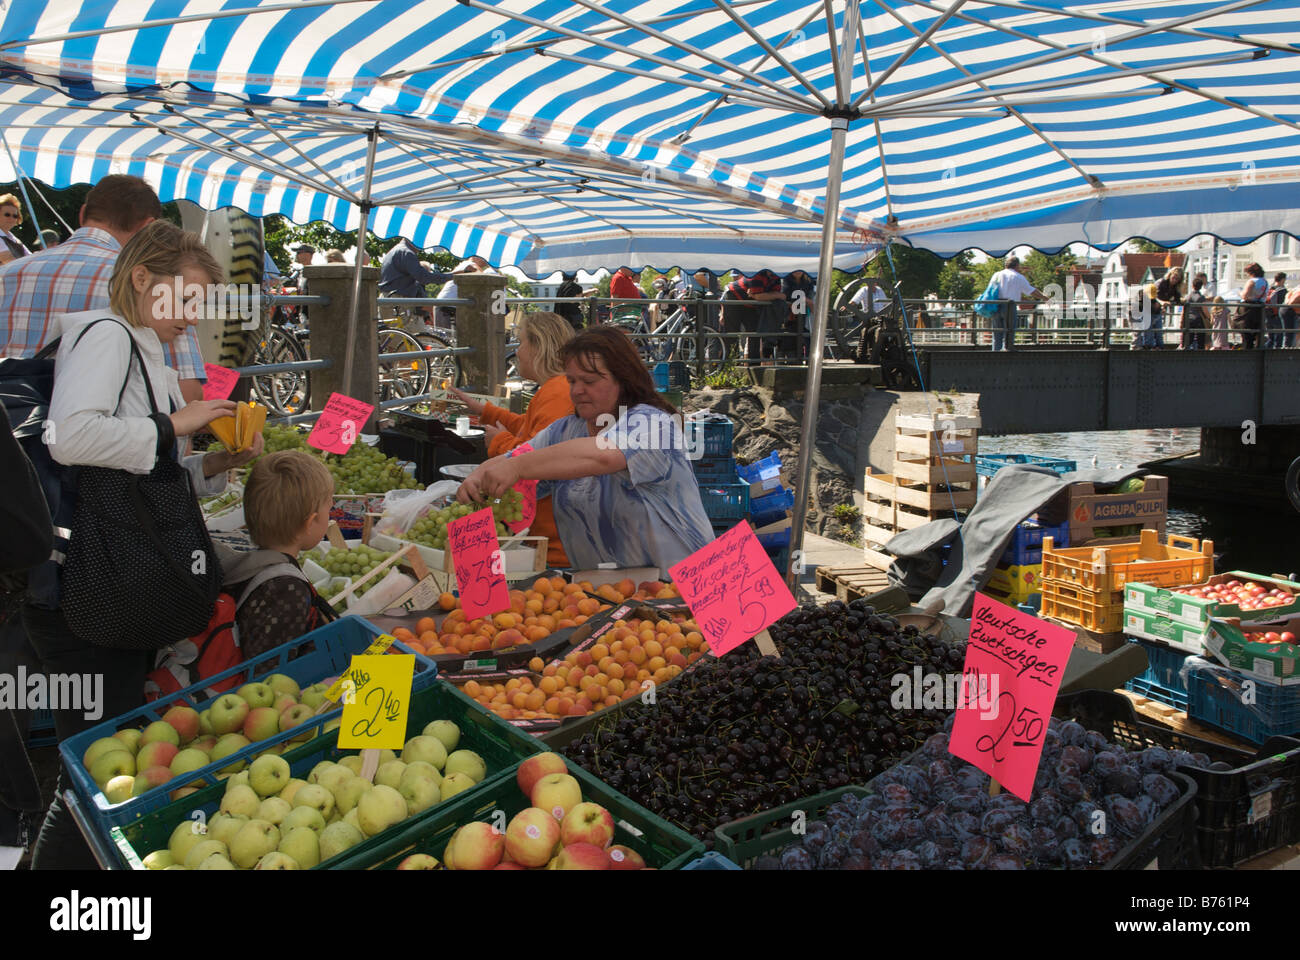 Obst und Gemüse Stall unter blauem gestreiften Segeltuchmarkise Warnemünde Hafen Deutschland Stockfoto